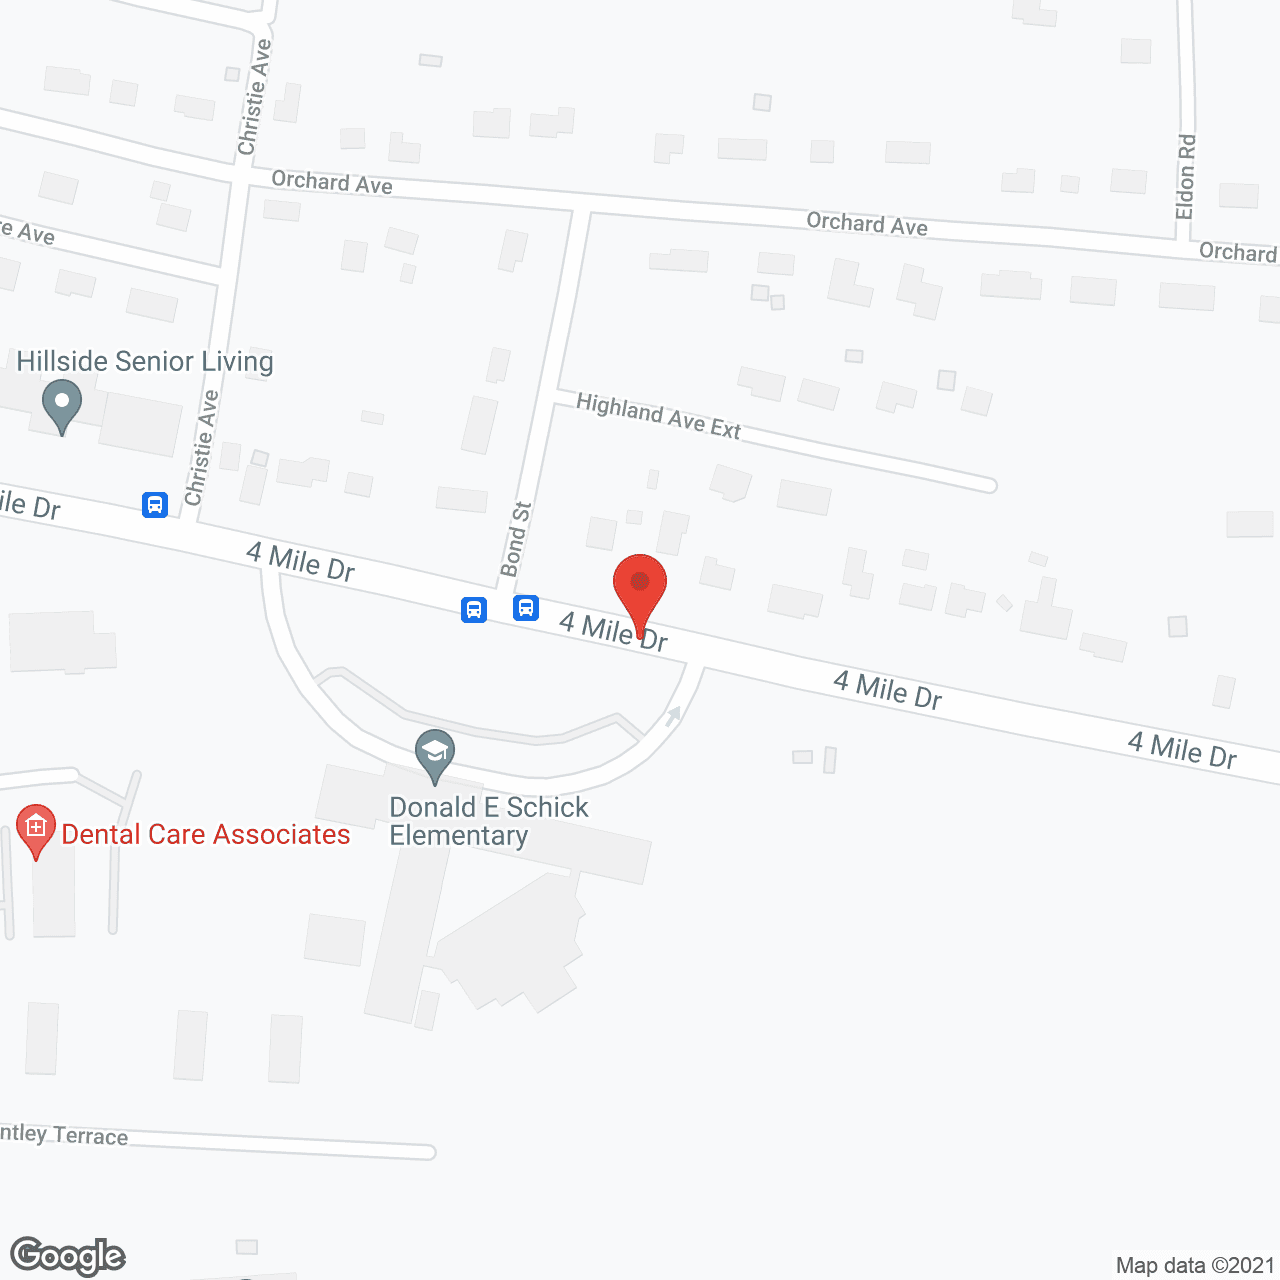 The Hillside Senior Living Community in google map